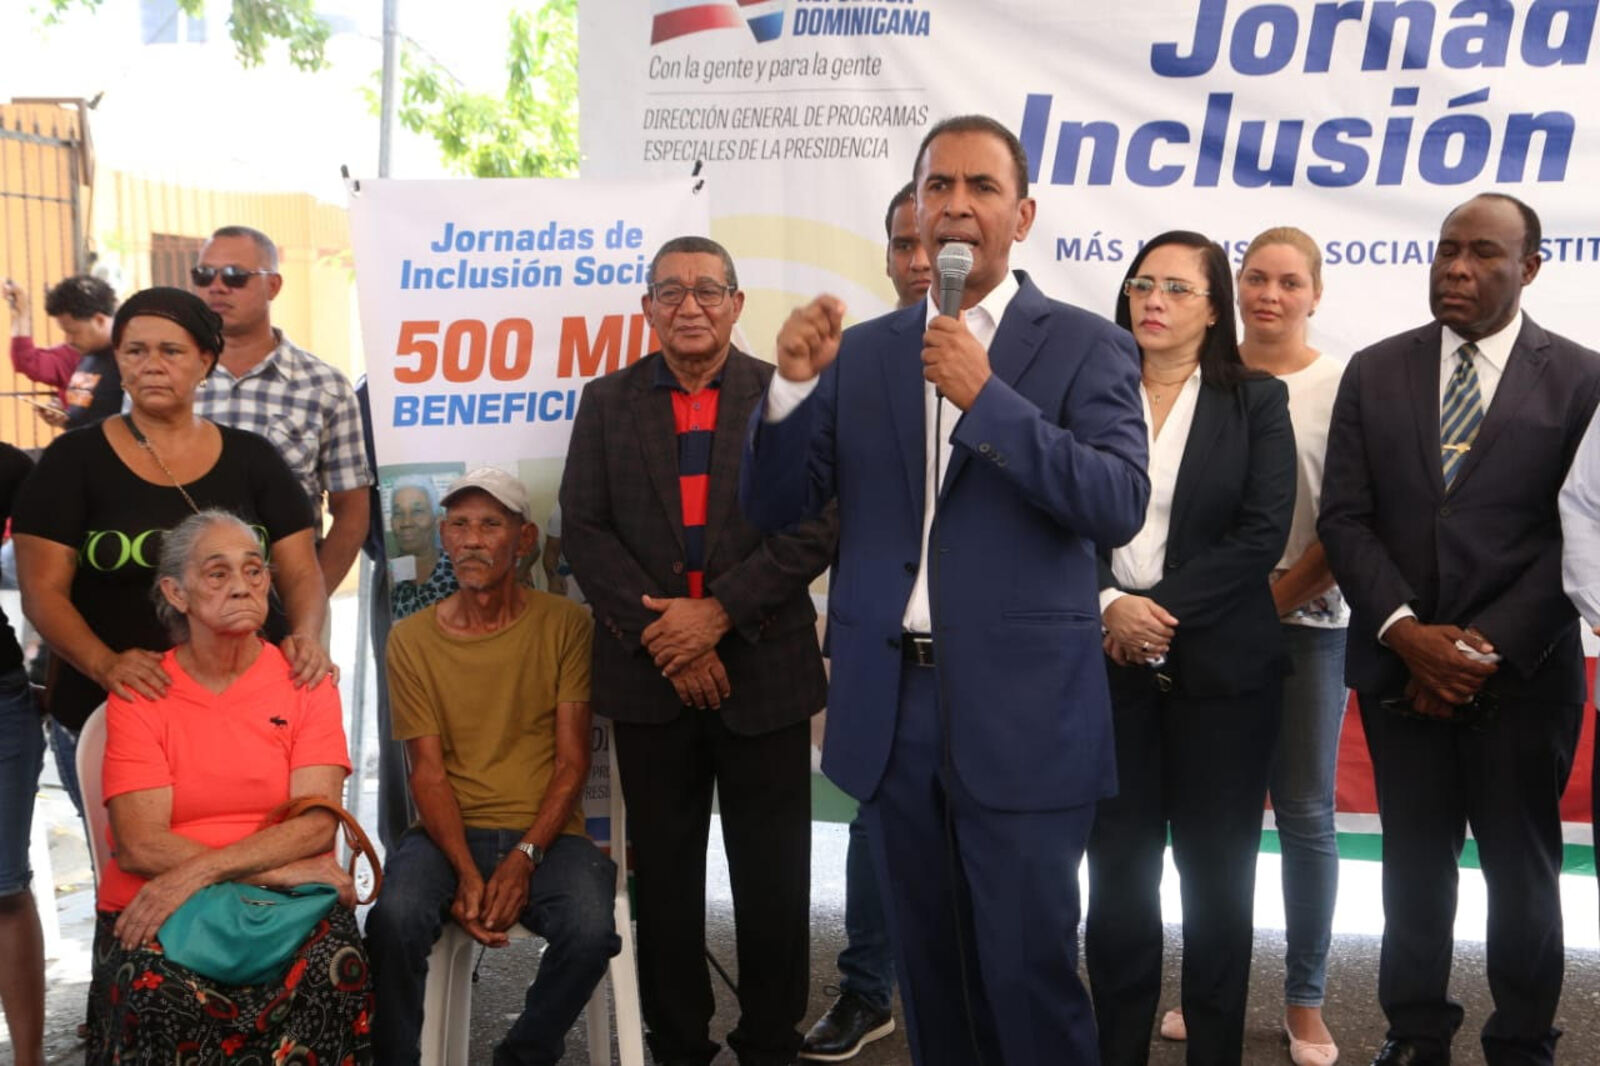 REPÚBLICA DOMINICANA: Plan de reducción de pobreza alcanza 500 mil beneficiarios durante jornada realizada en Cristo Rey